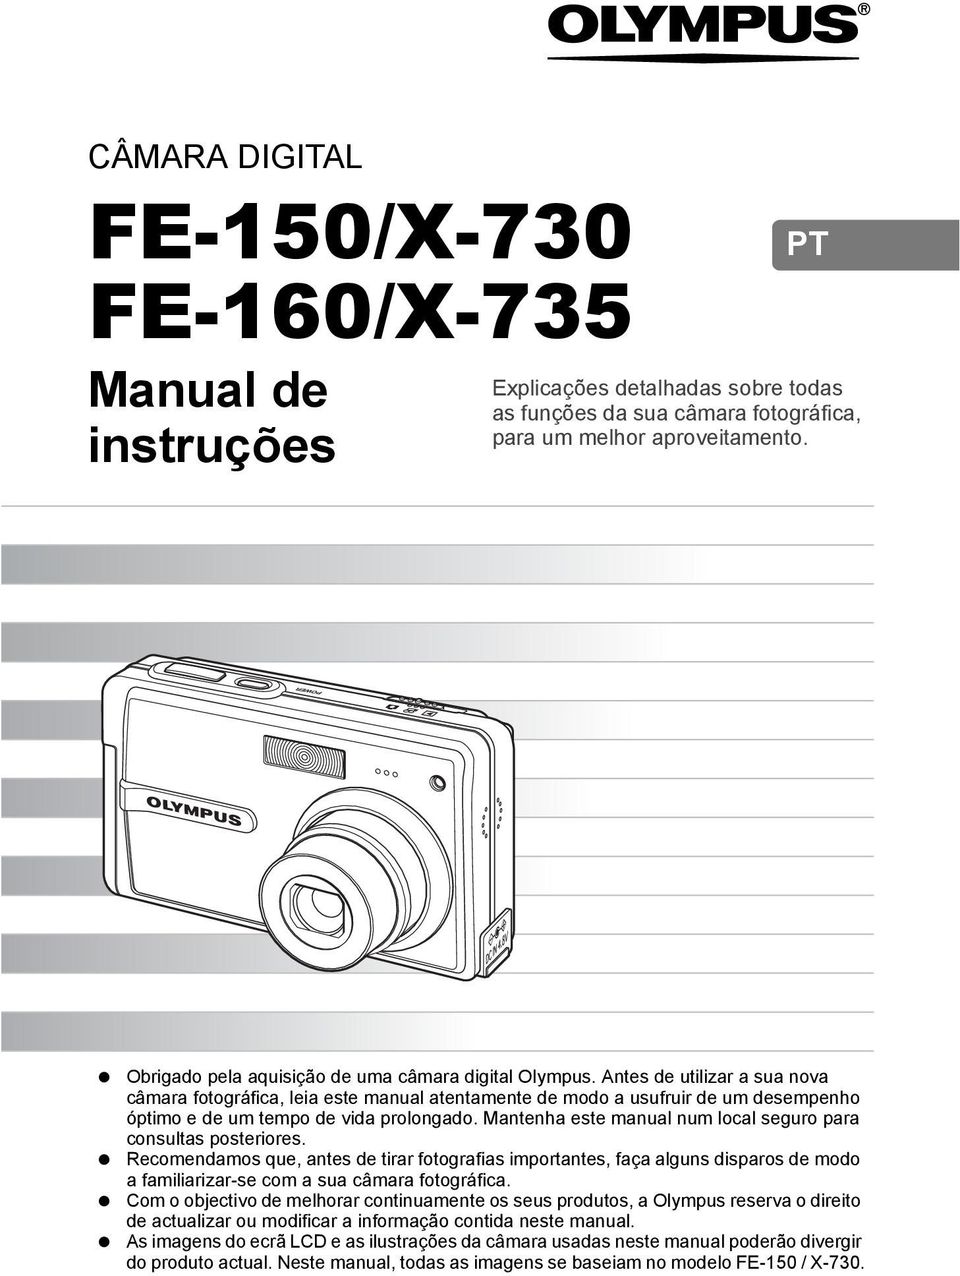 Antes de utilizar a sua nova câmara fotográfica, leia este manual atentamente de modo a usufruir de um desempenho óptimo e de um tempo de vida prolongado.